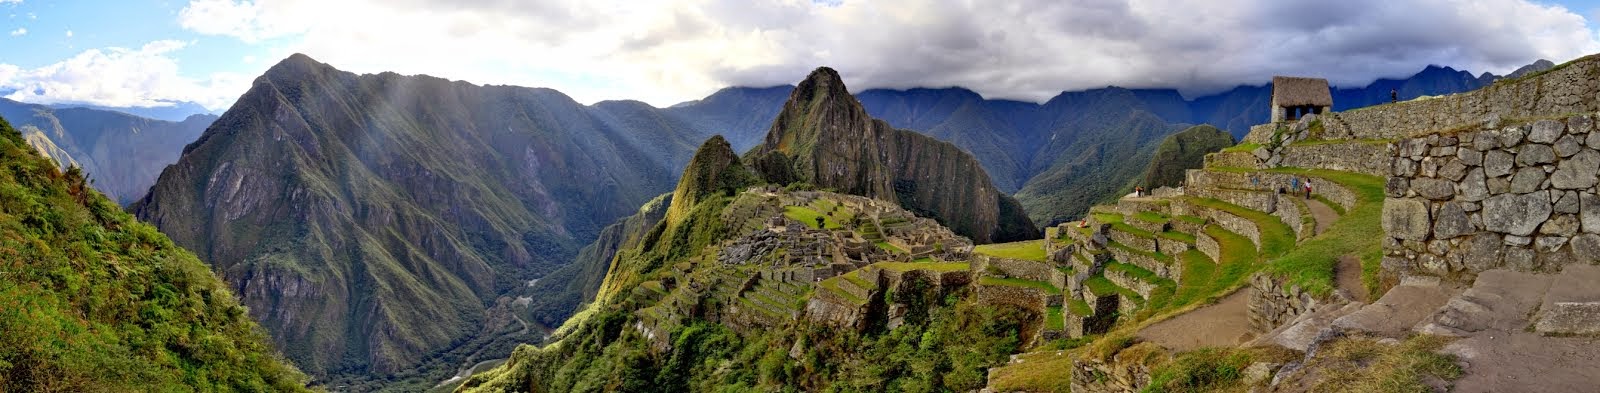 Machu Picchu-Cuzco